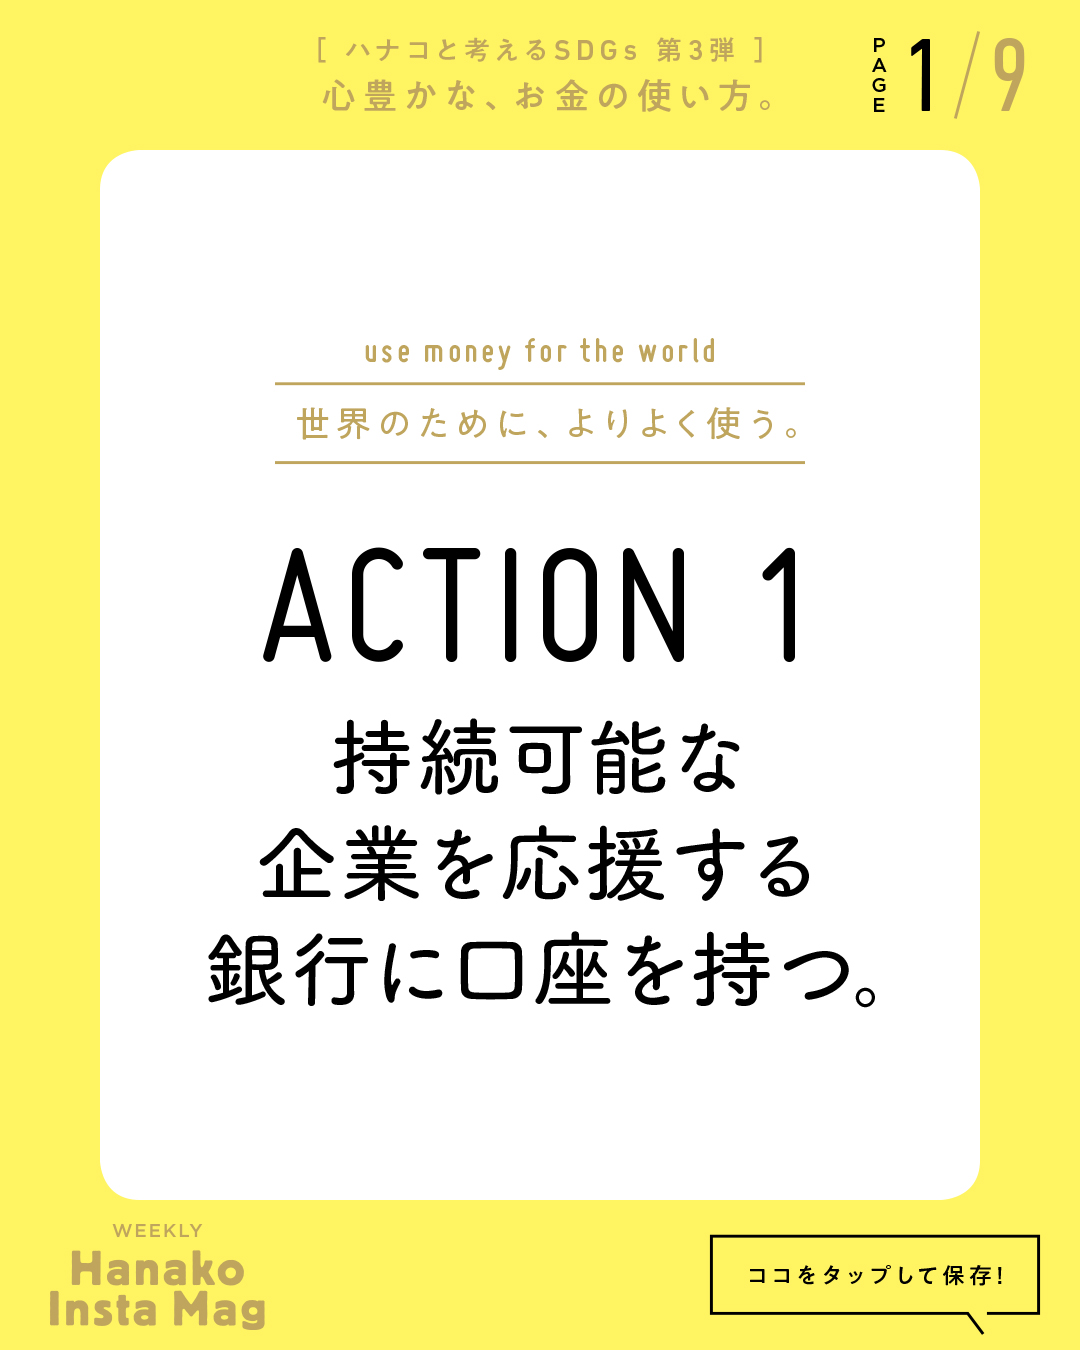 SDGs#3_sekai_action#1-1